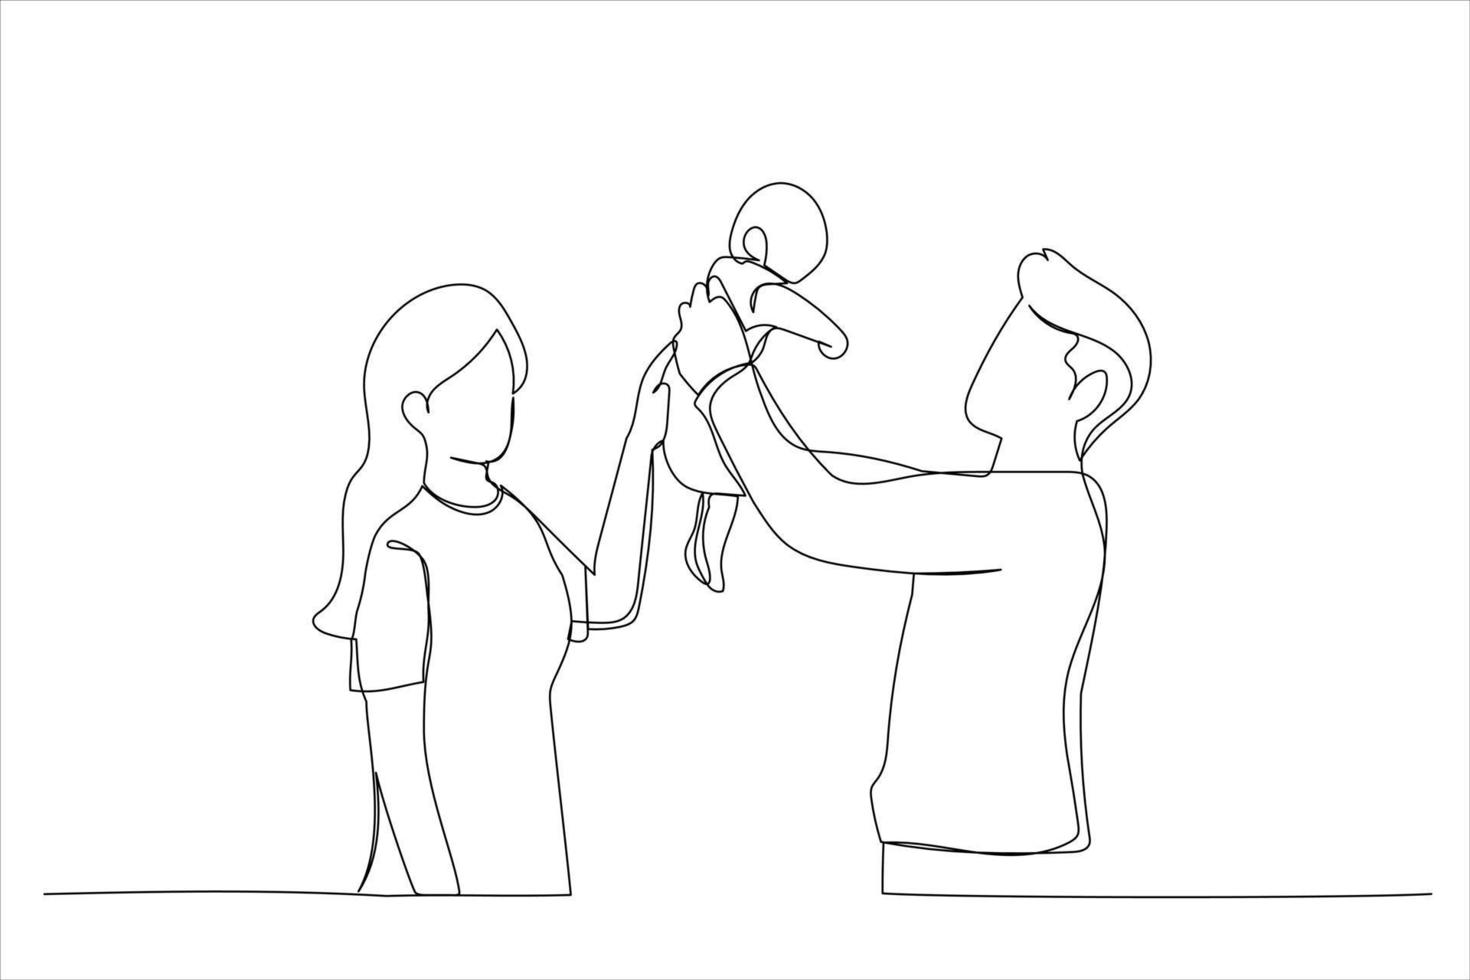 dessin du père soulevant le bébé nouveau-né dans les airs et l'embrassant, la mère regarde sur le côté. style d'art en ligne unique vecteur